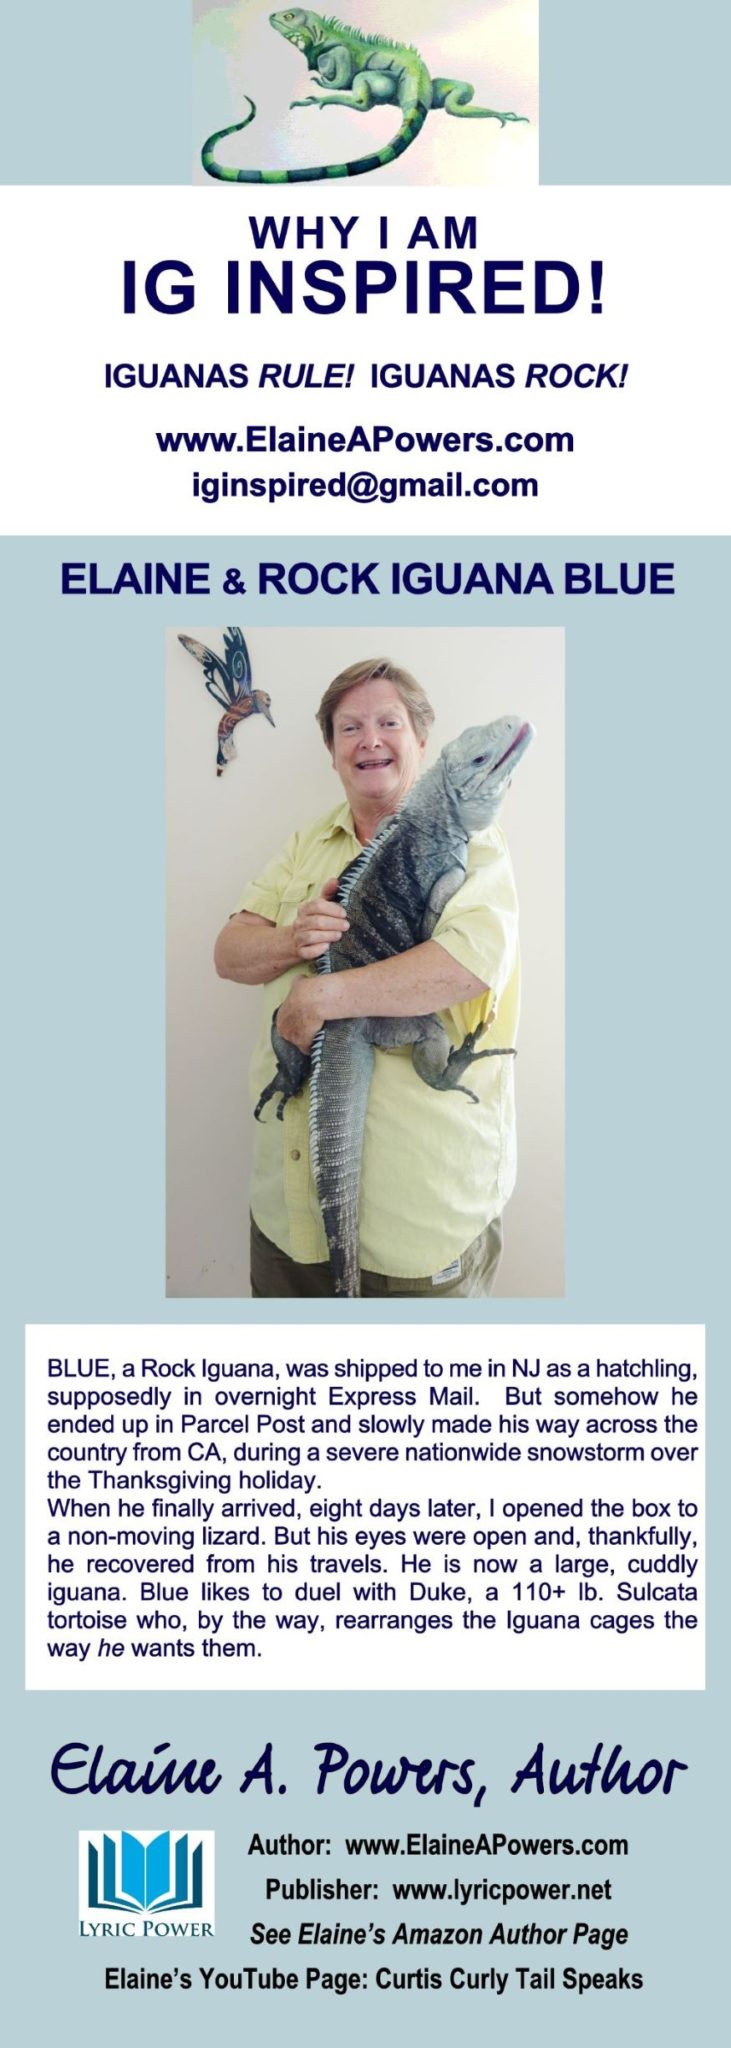 infographic of Elaine Powers with large hybrid iguana